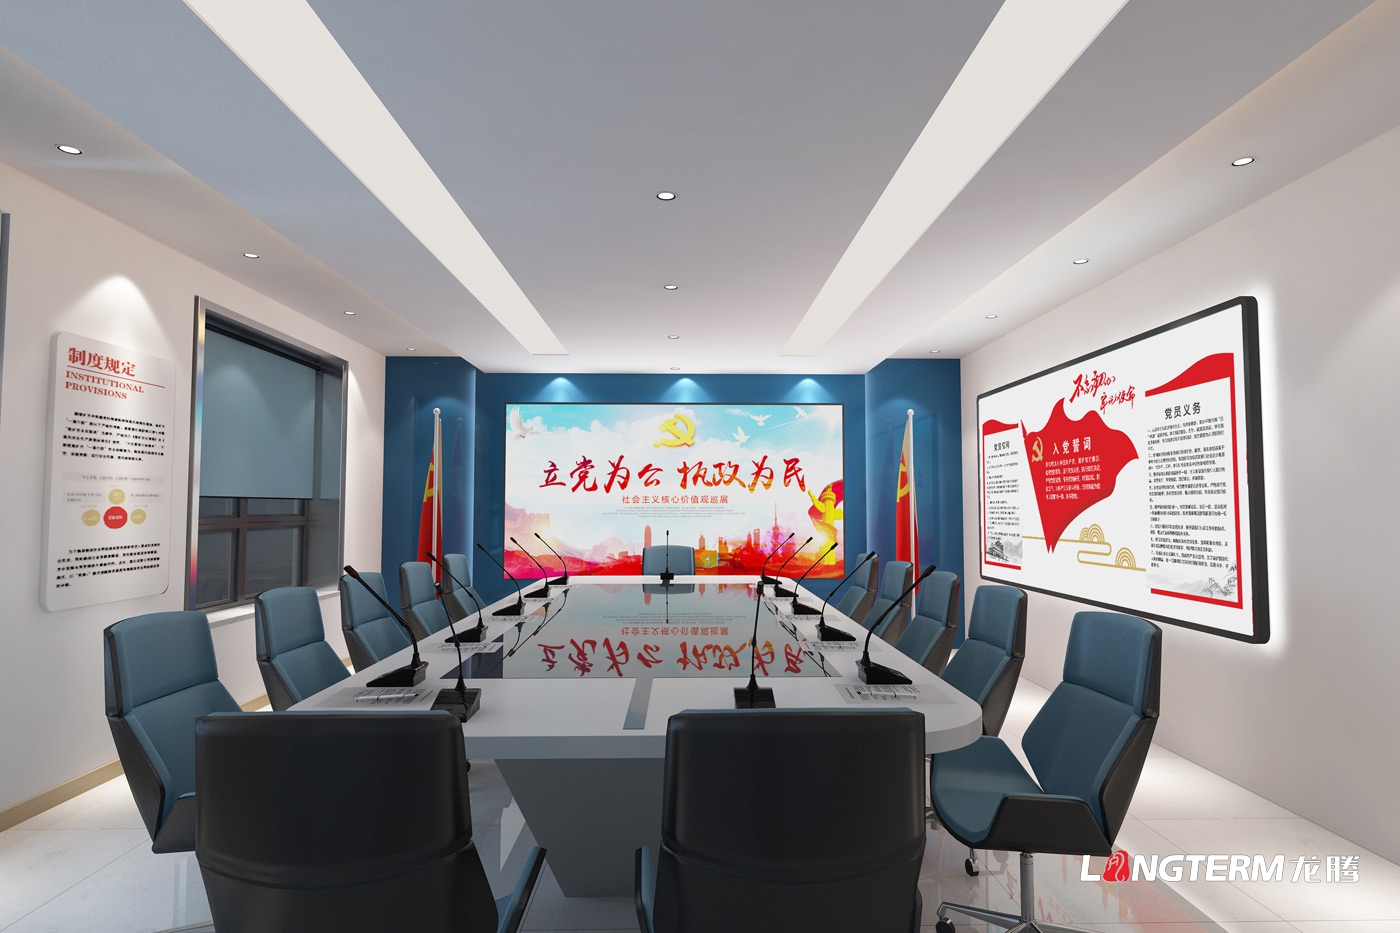 陕西延伸石油集团党员运动中央设计_党建室及图书室设计_展厅及大厅设计